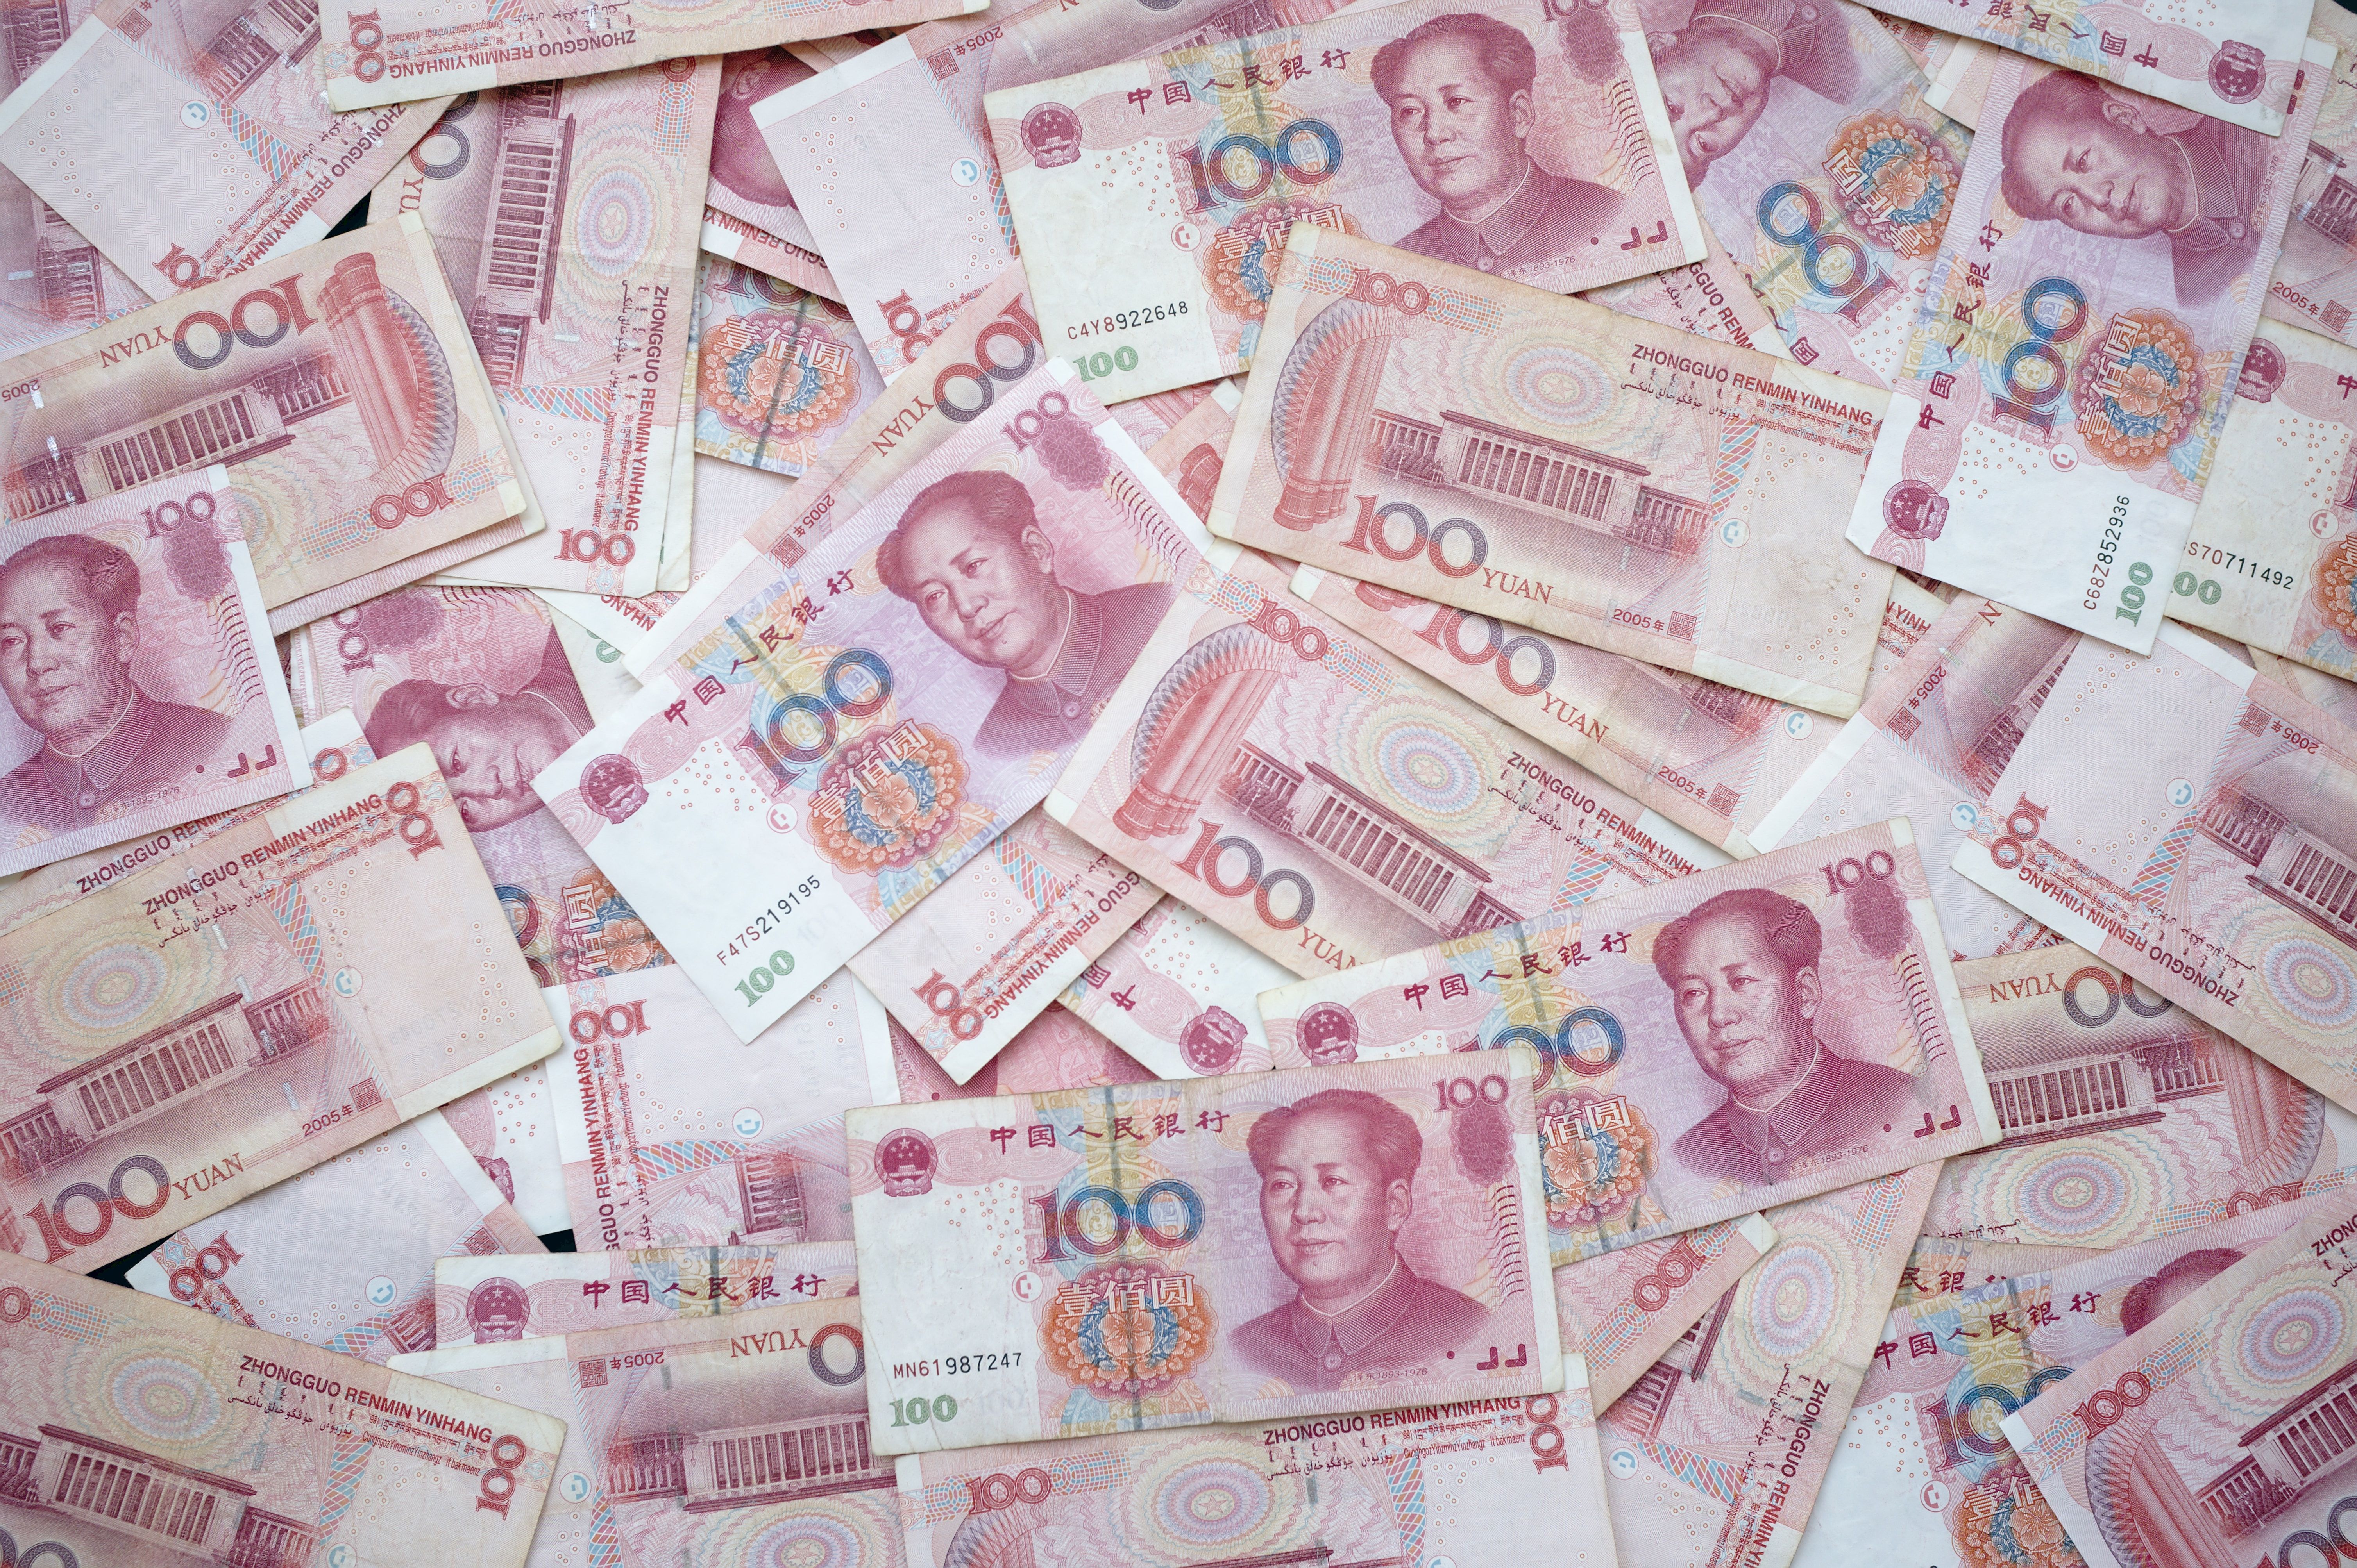 Прогноз для юаня и доллара США